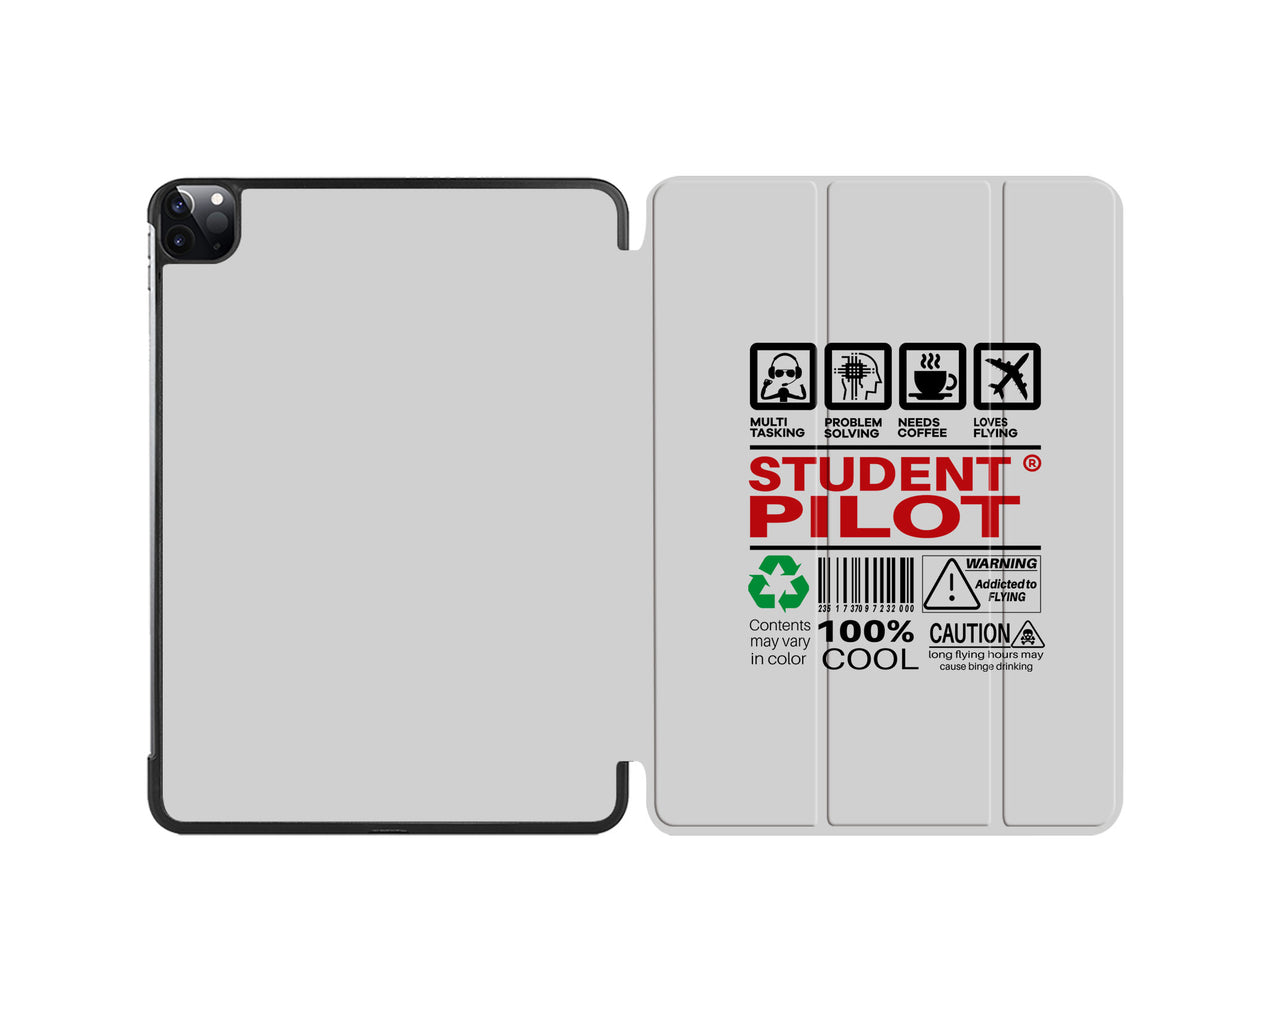 Student Pilot Label Designed iPad Cases